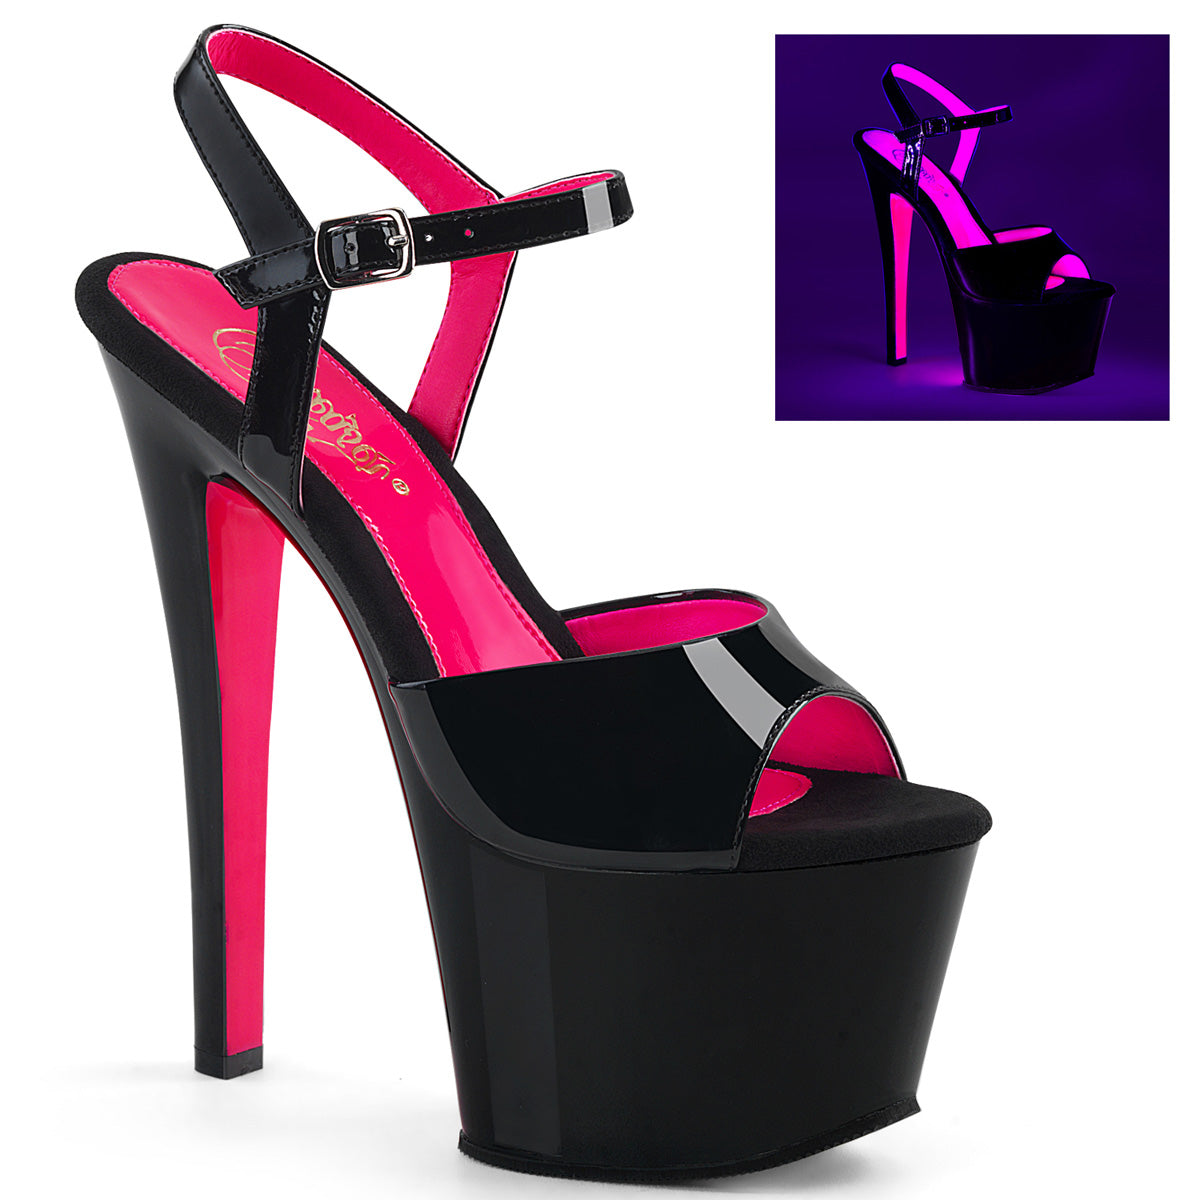 SKY-309TT 7" Heel Black Patent with Hot Pink Pole Dancer Fetish Shoes